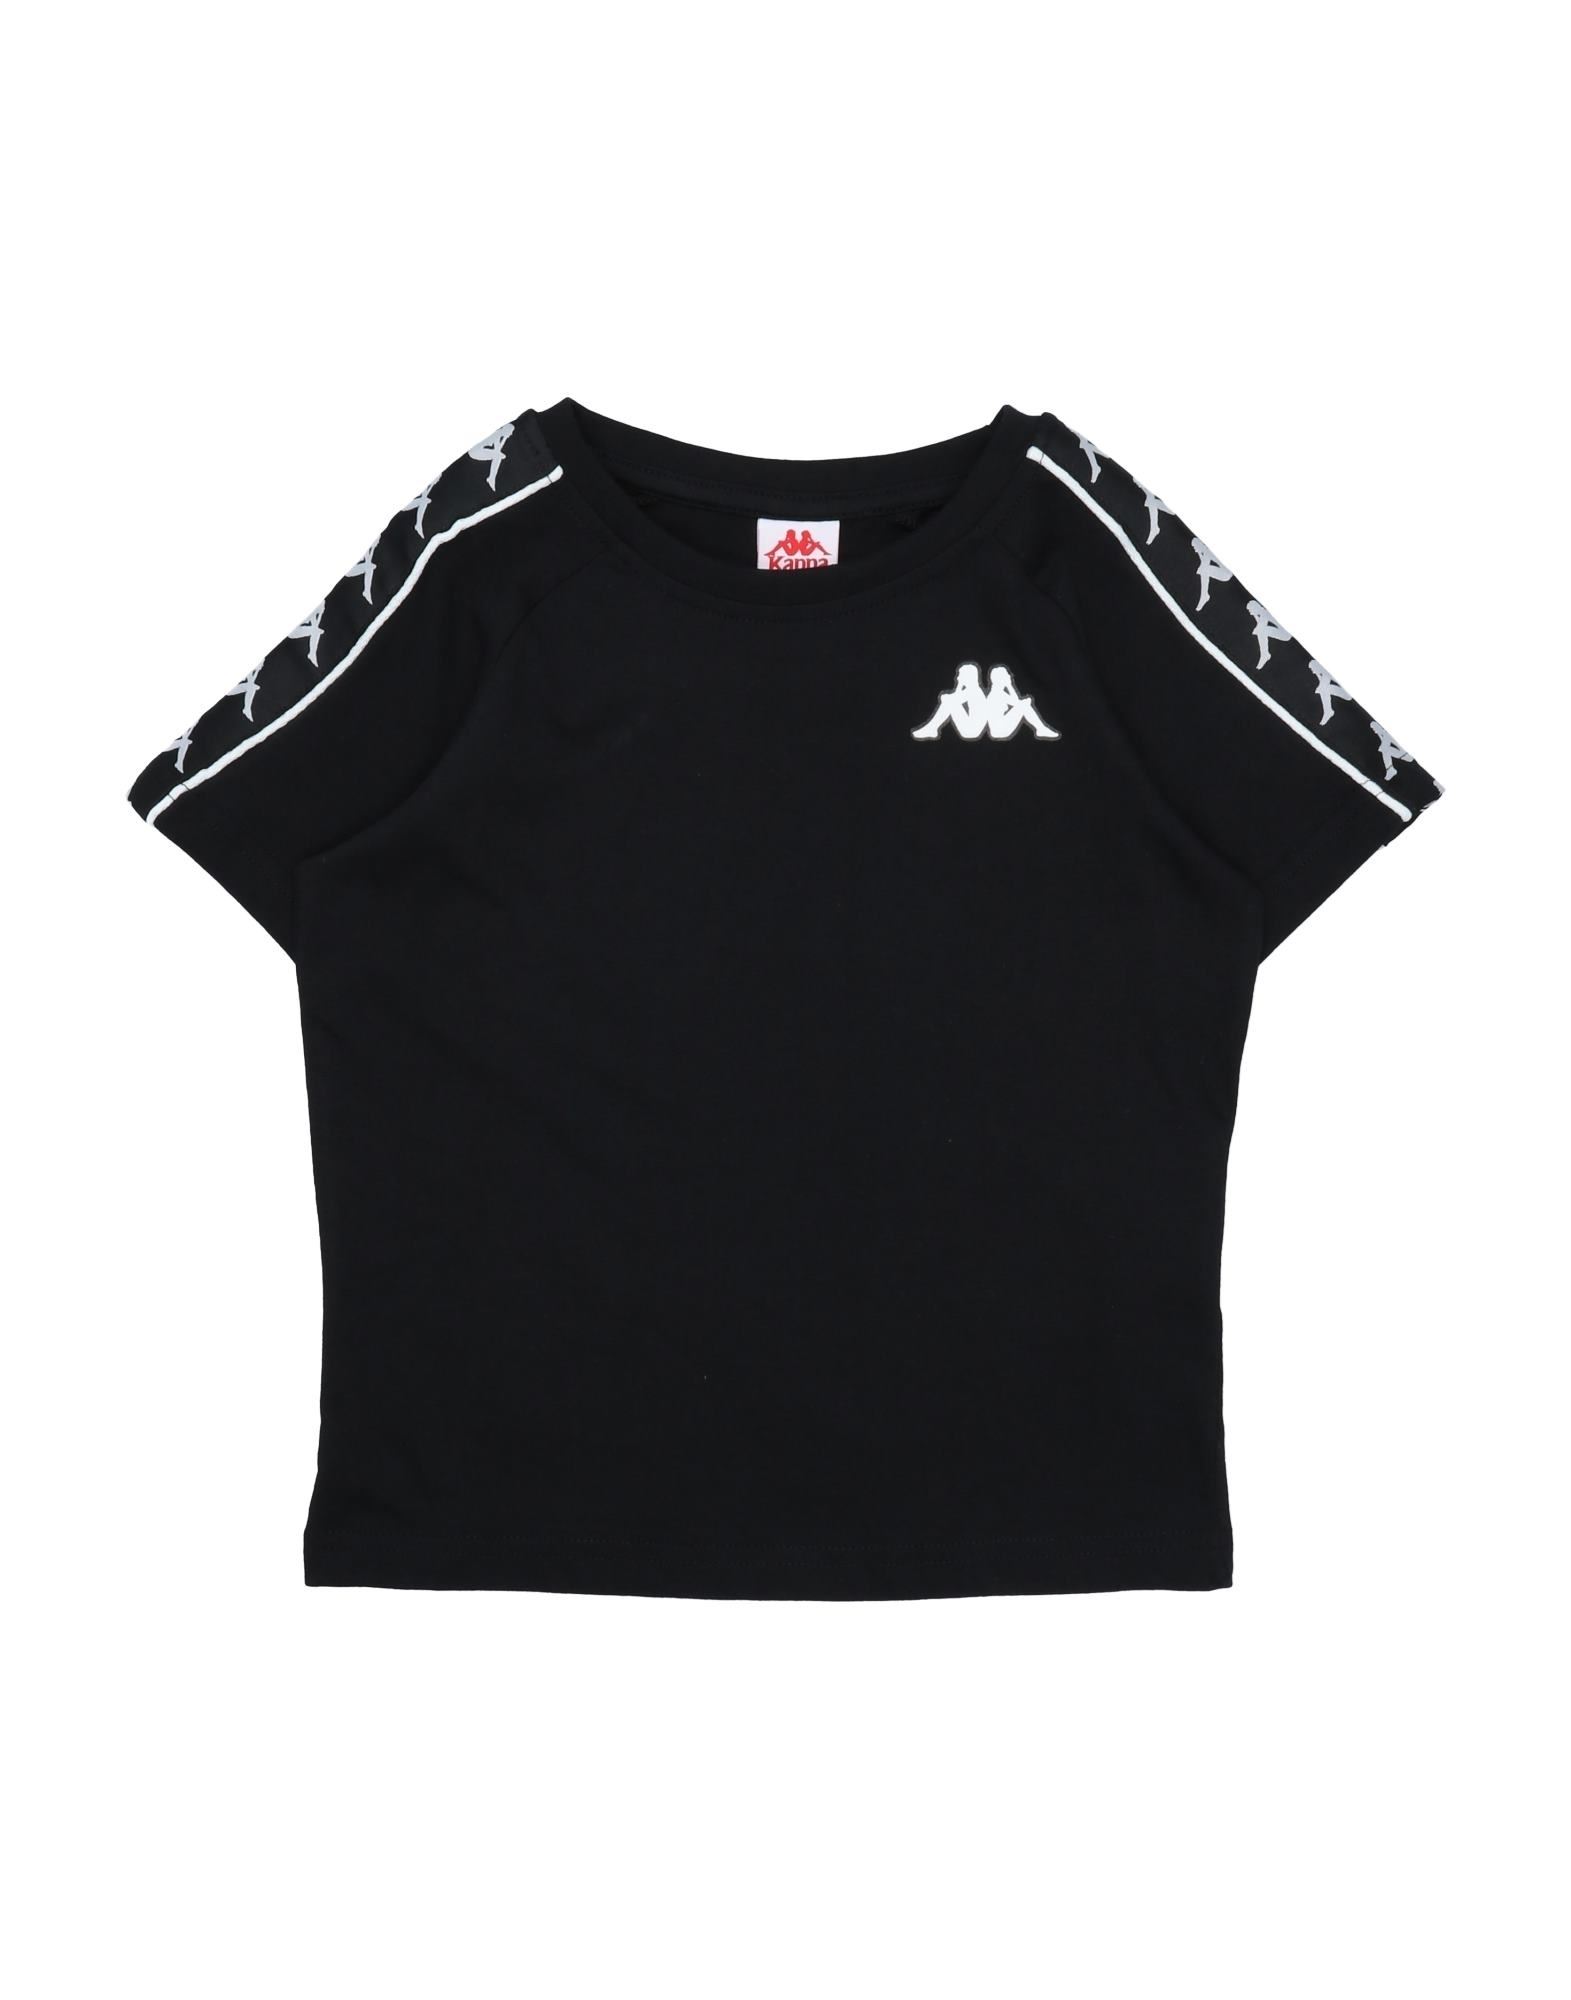 Shop Kappa Toddler Boy T-shirt Black Size 6 Cotton